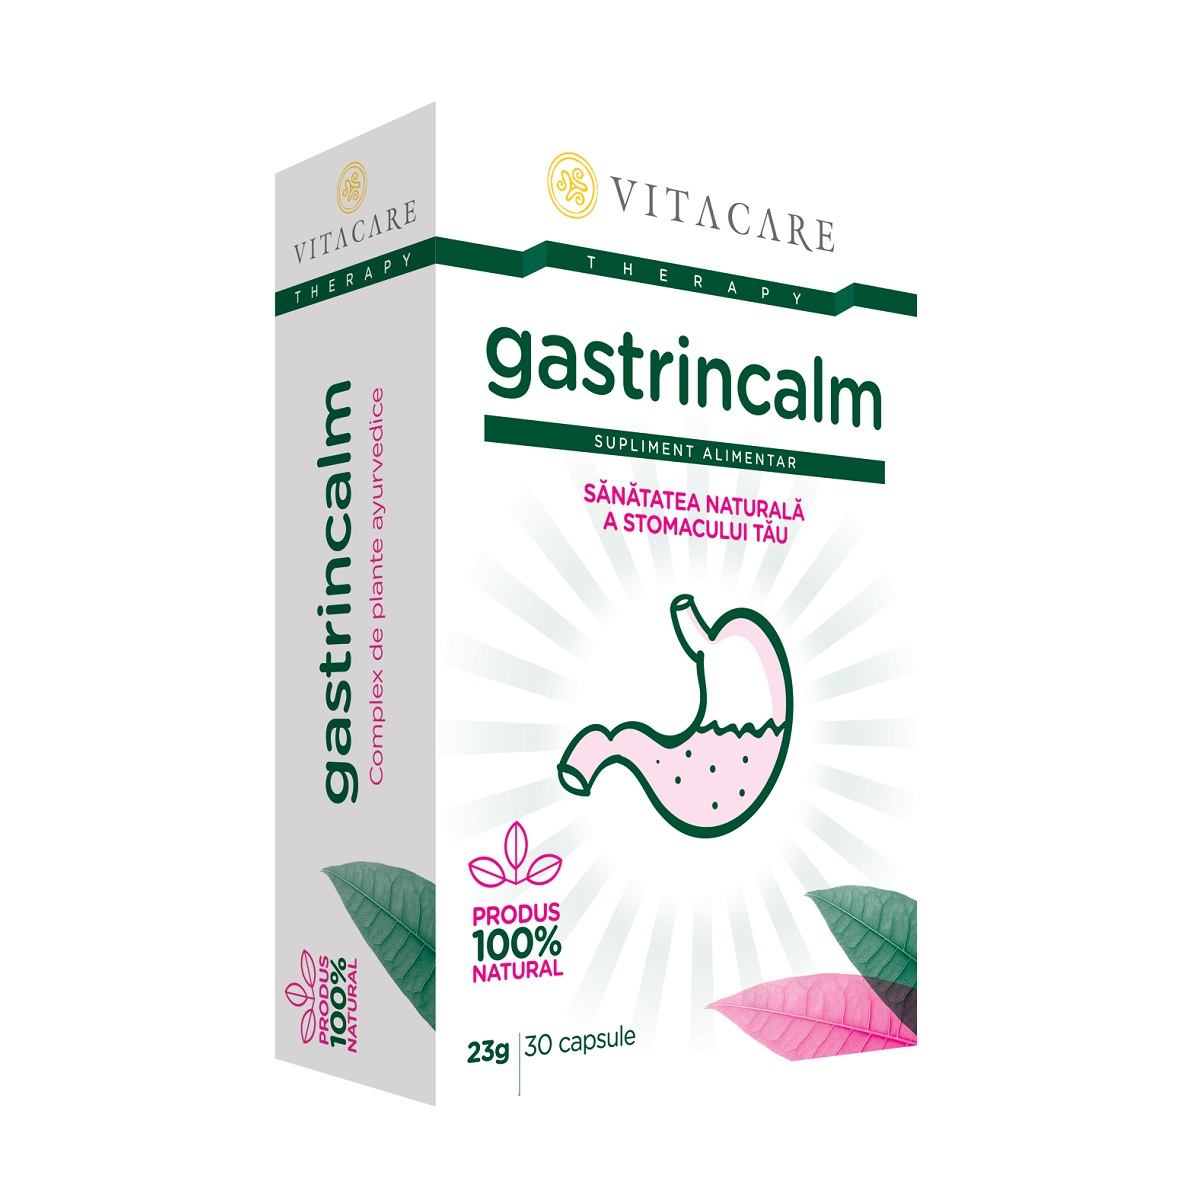 Antiacide - Gastrincalm, 30 capsule, Vitacare, sinapis.ro